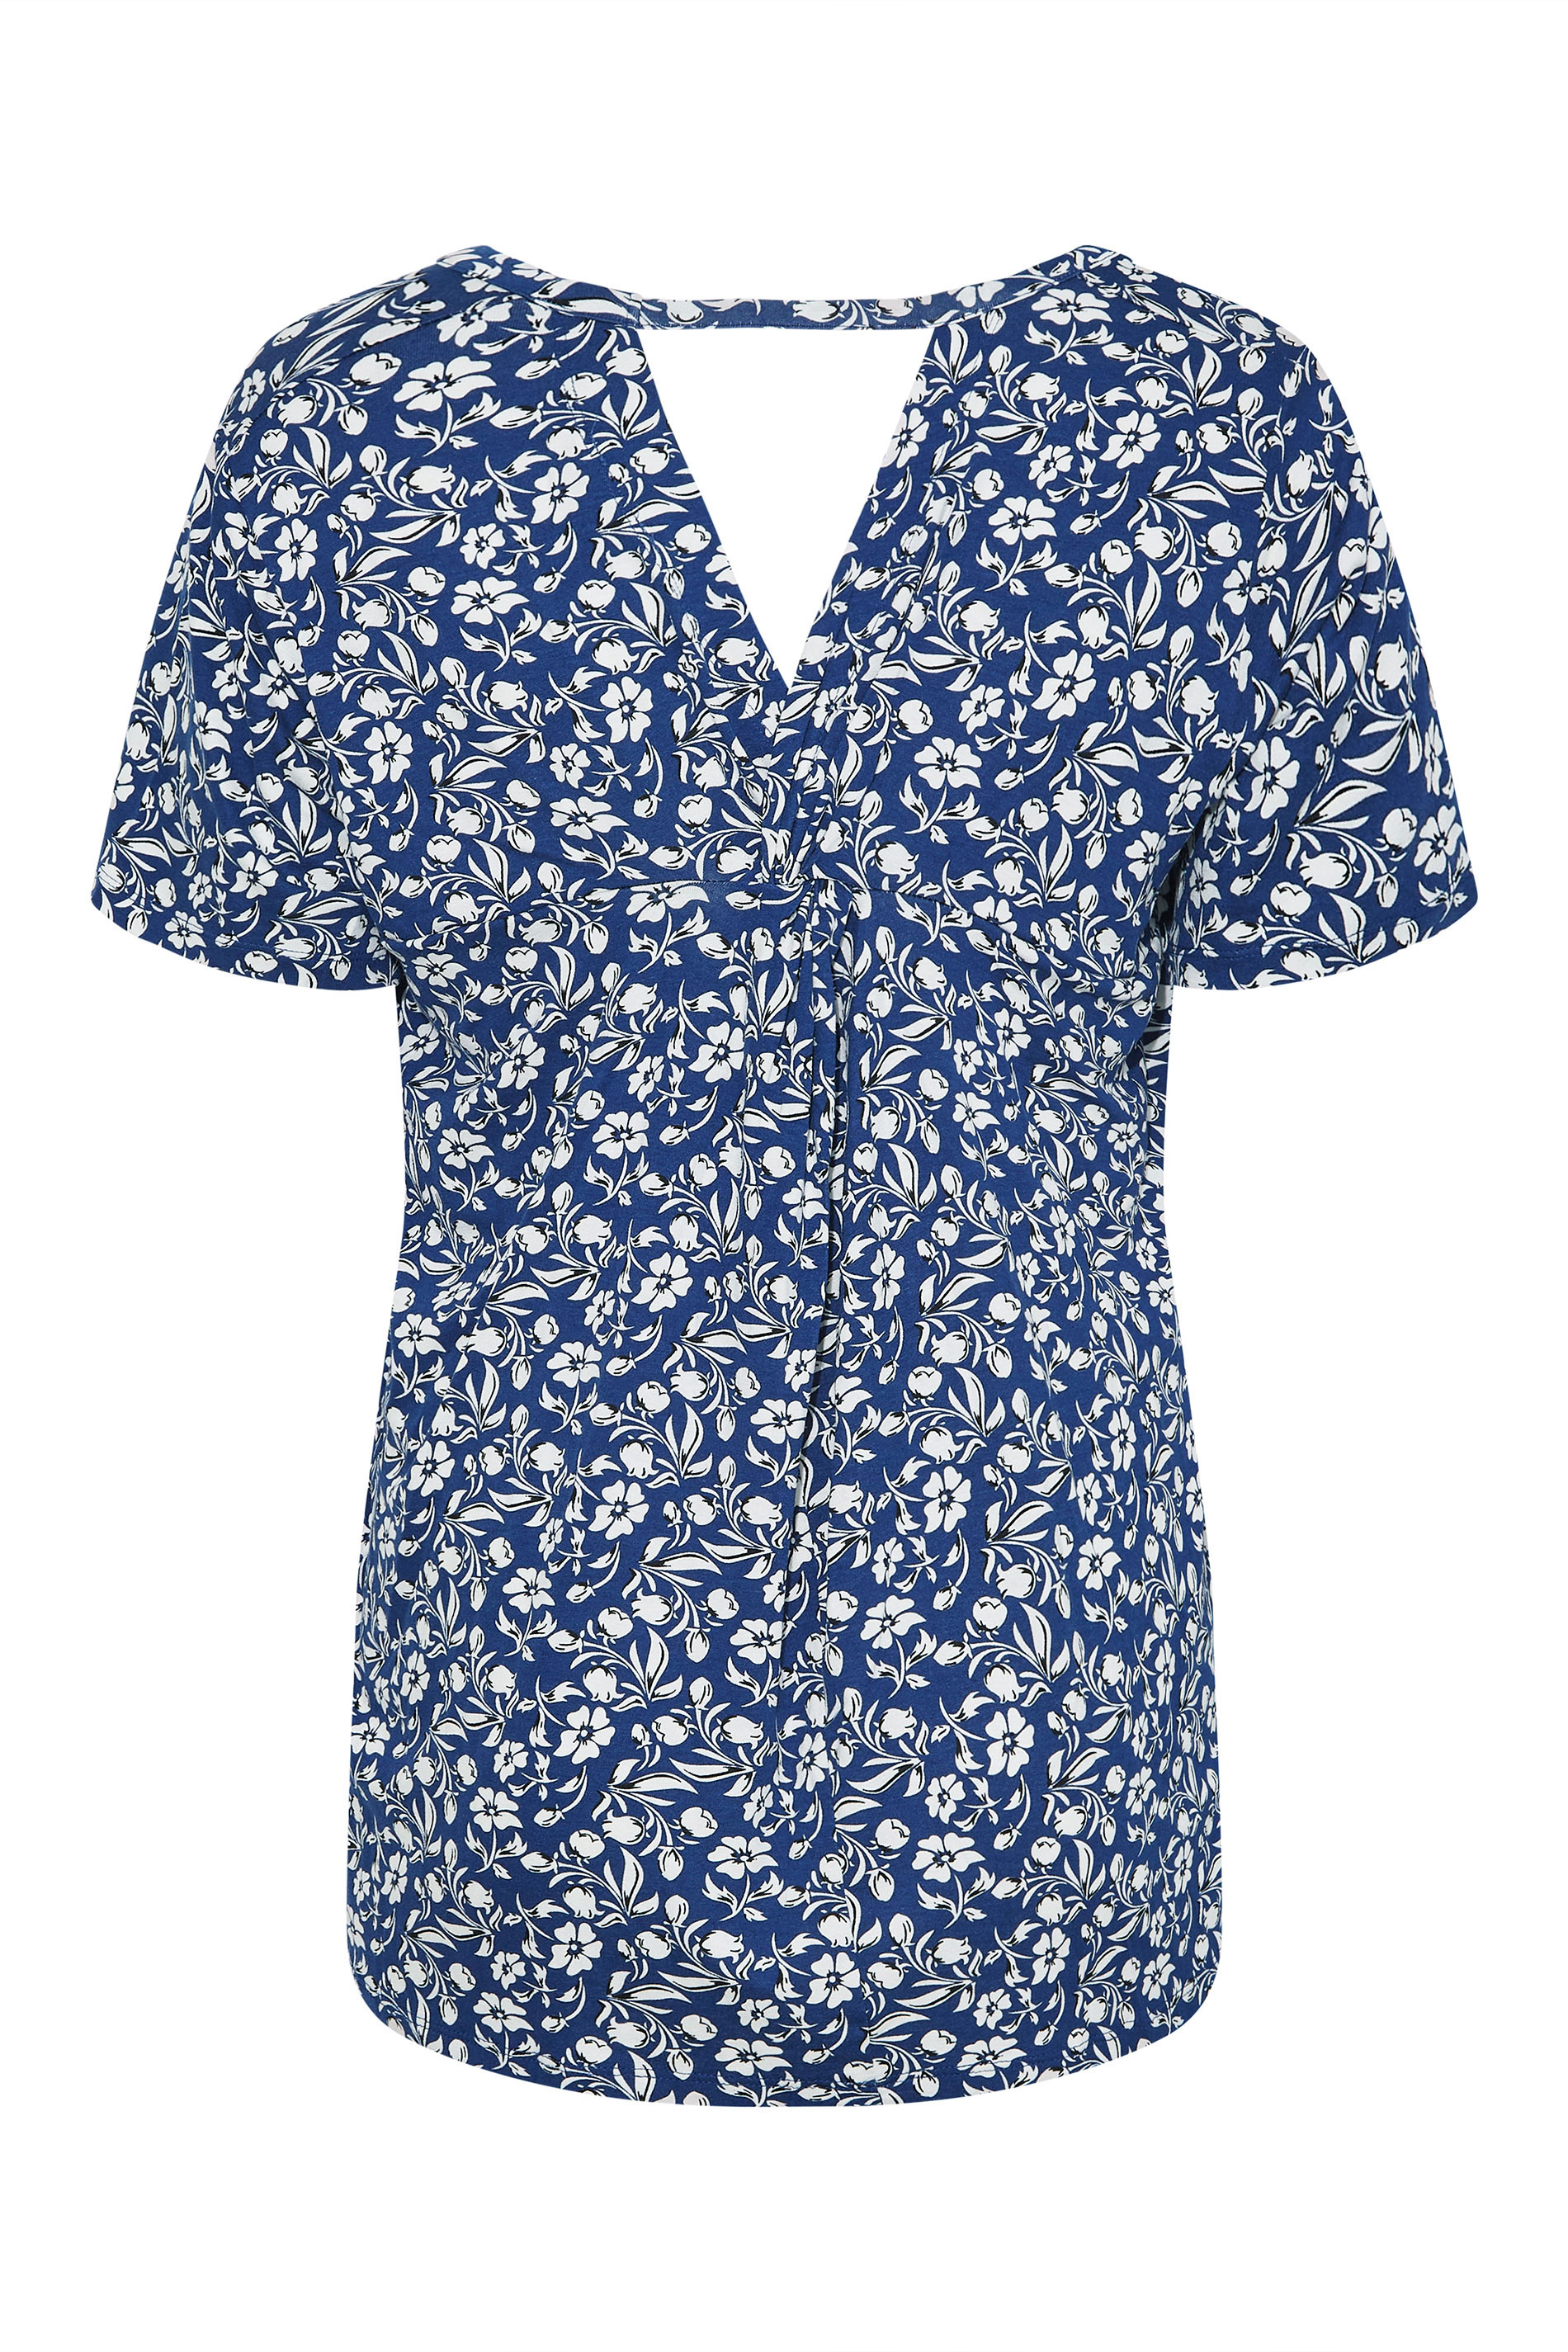 Grande taille  Tops Grande taille  Tops Casual | T-Shirt Bleu Design Floral Découpé au Dos - XZ31796